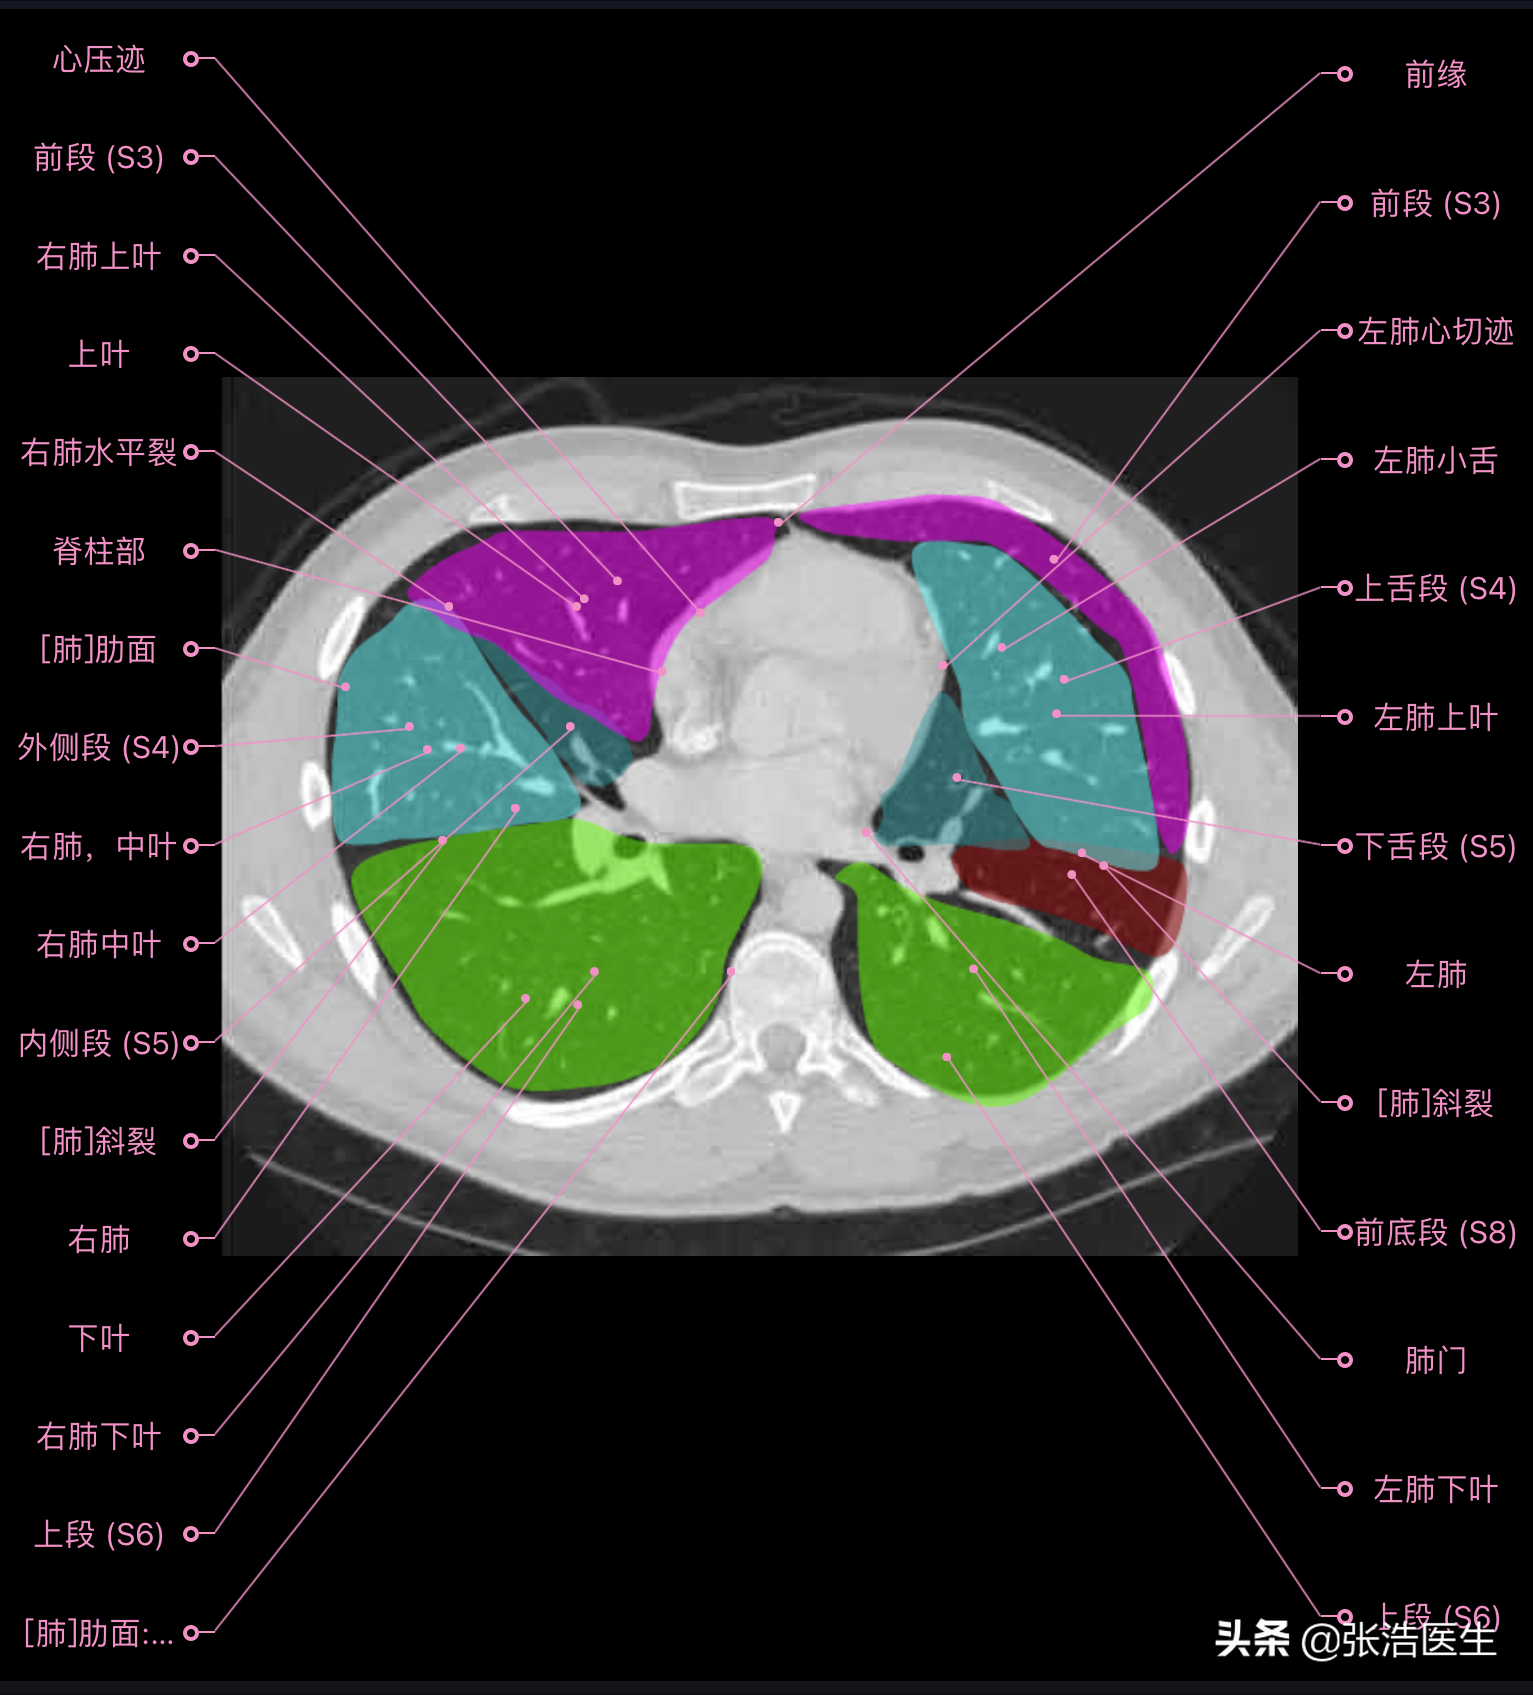 肺部ct高清解剖图谱,附带详细标注